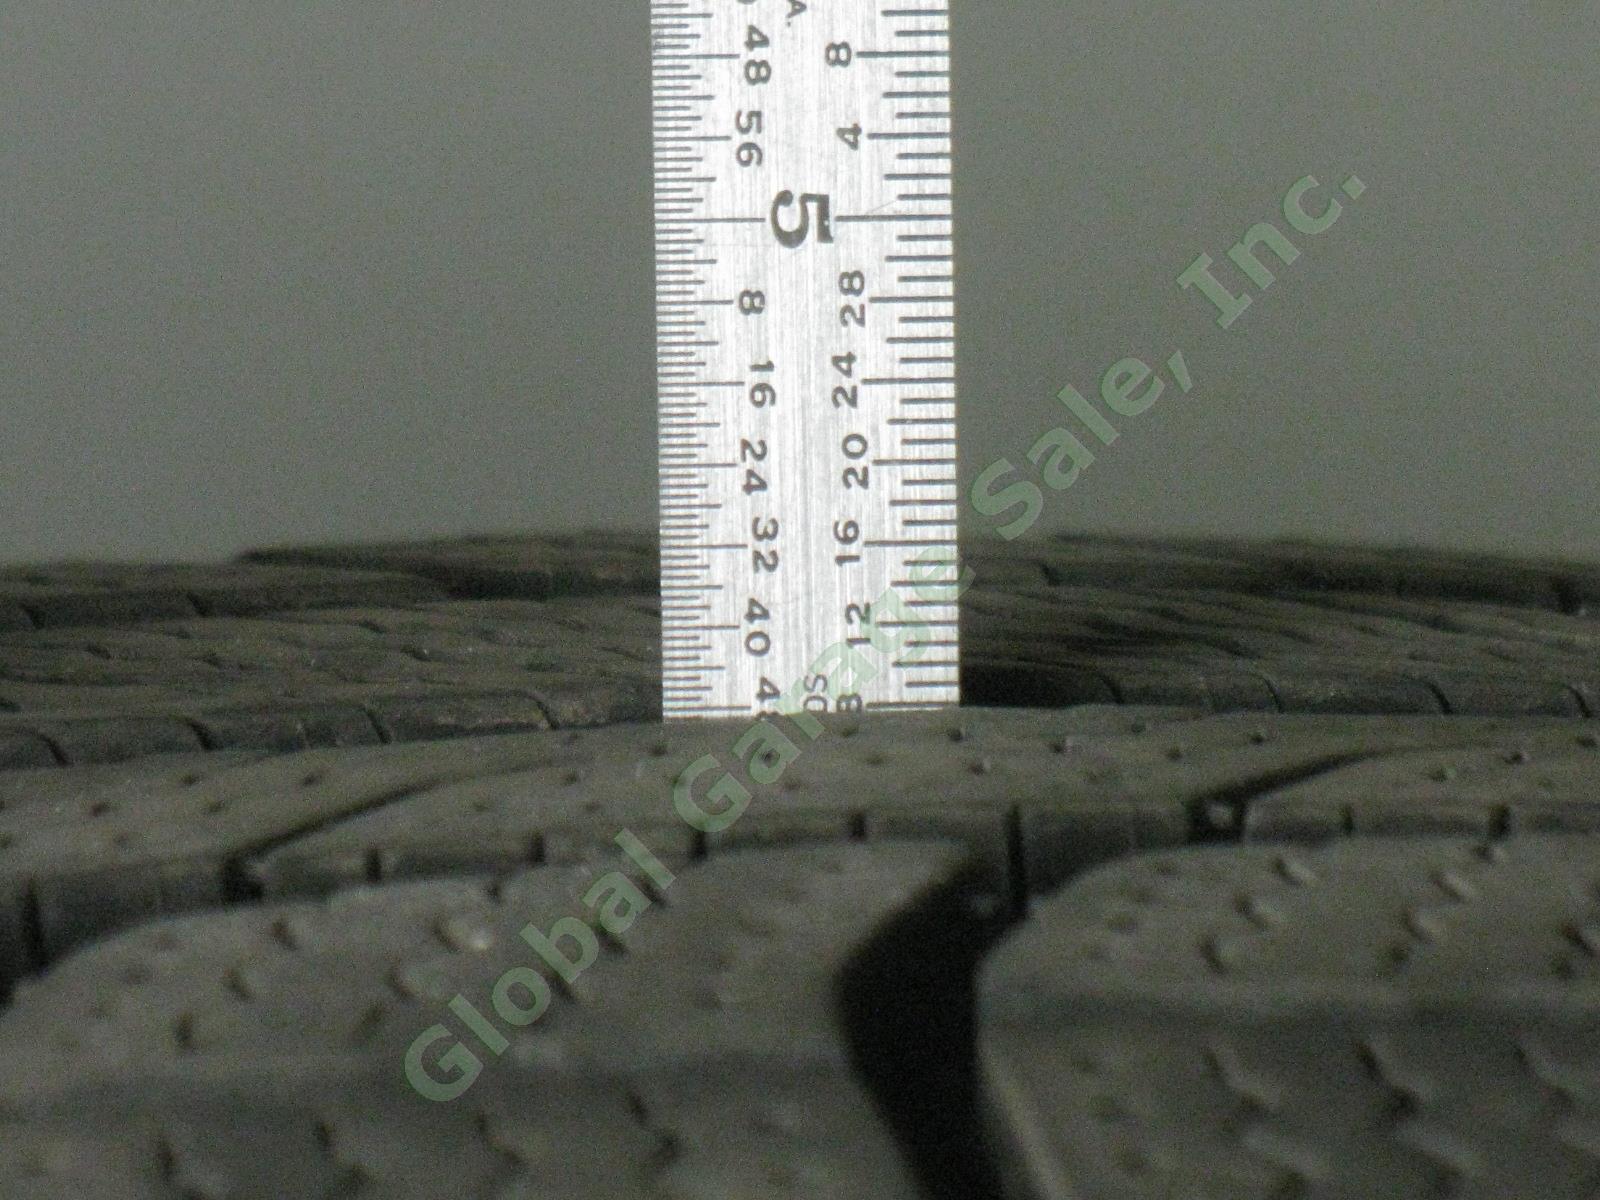 4 Michelin Latitude 18" X-Ice M+S Mud Snow Tires 235/60/R18 Acura RDX 8/32" EXC! 5